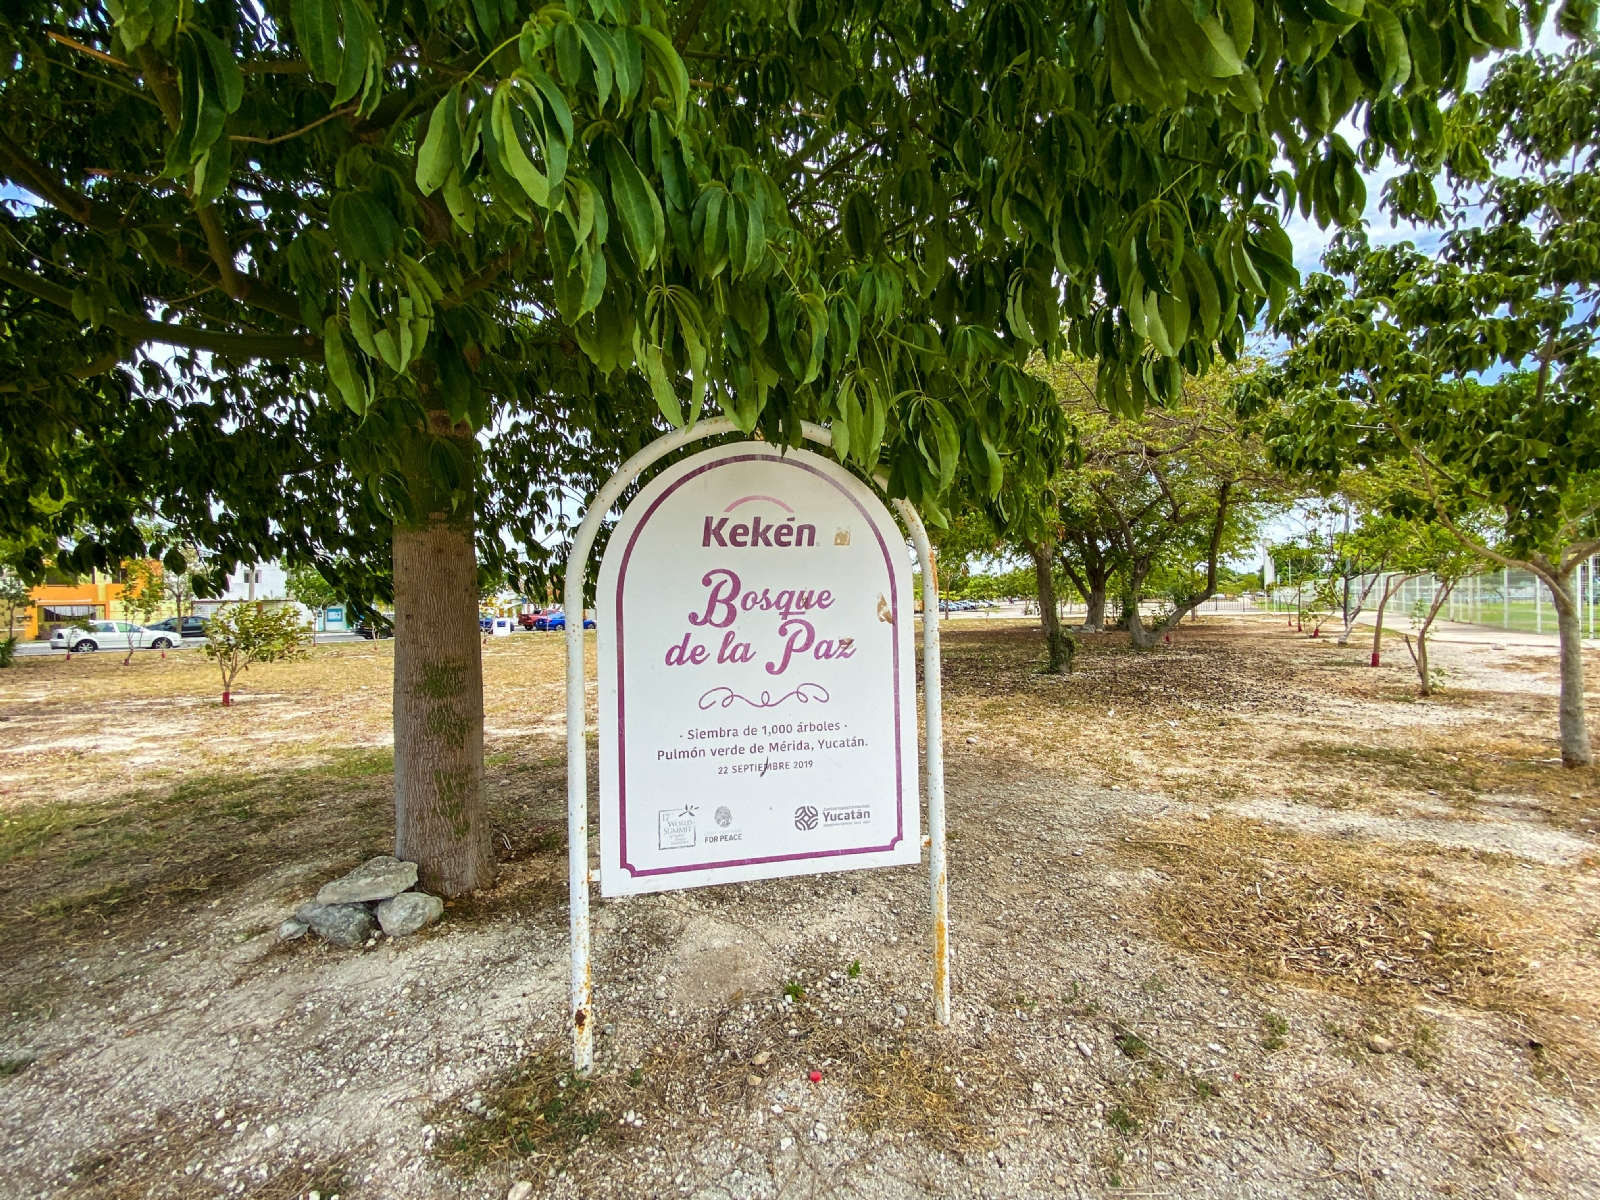 El “Bosque de la Paz”, que fue anunciado por el Ayuntamiento de Mérida y Kekén, actualmente está desierto